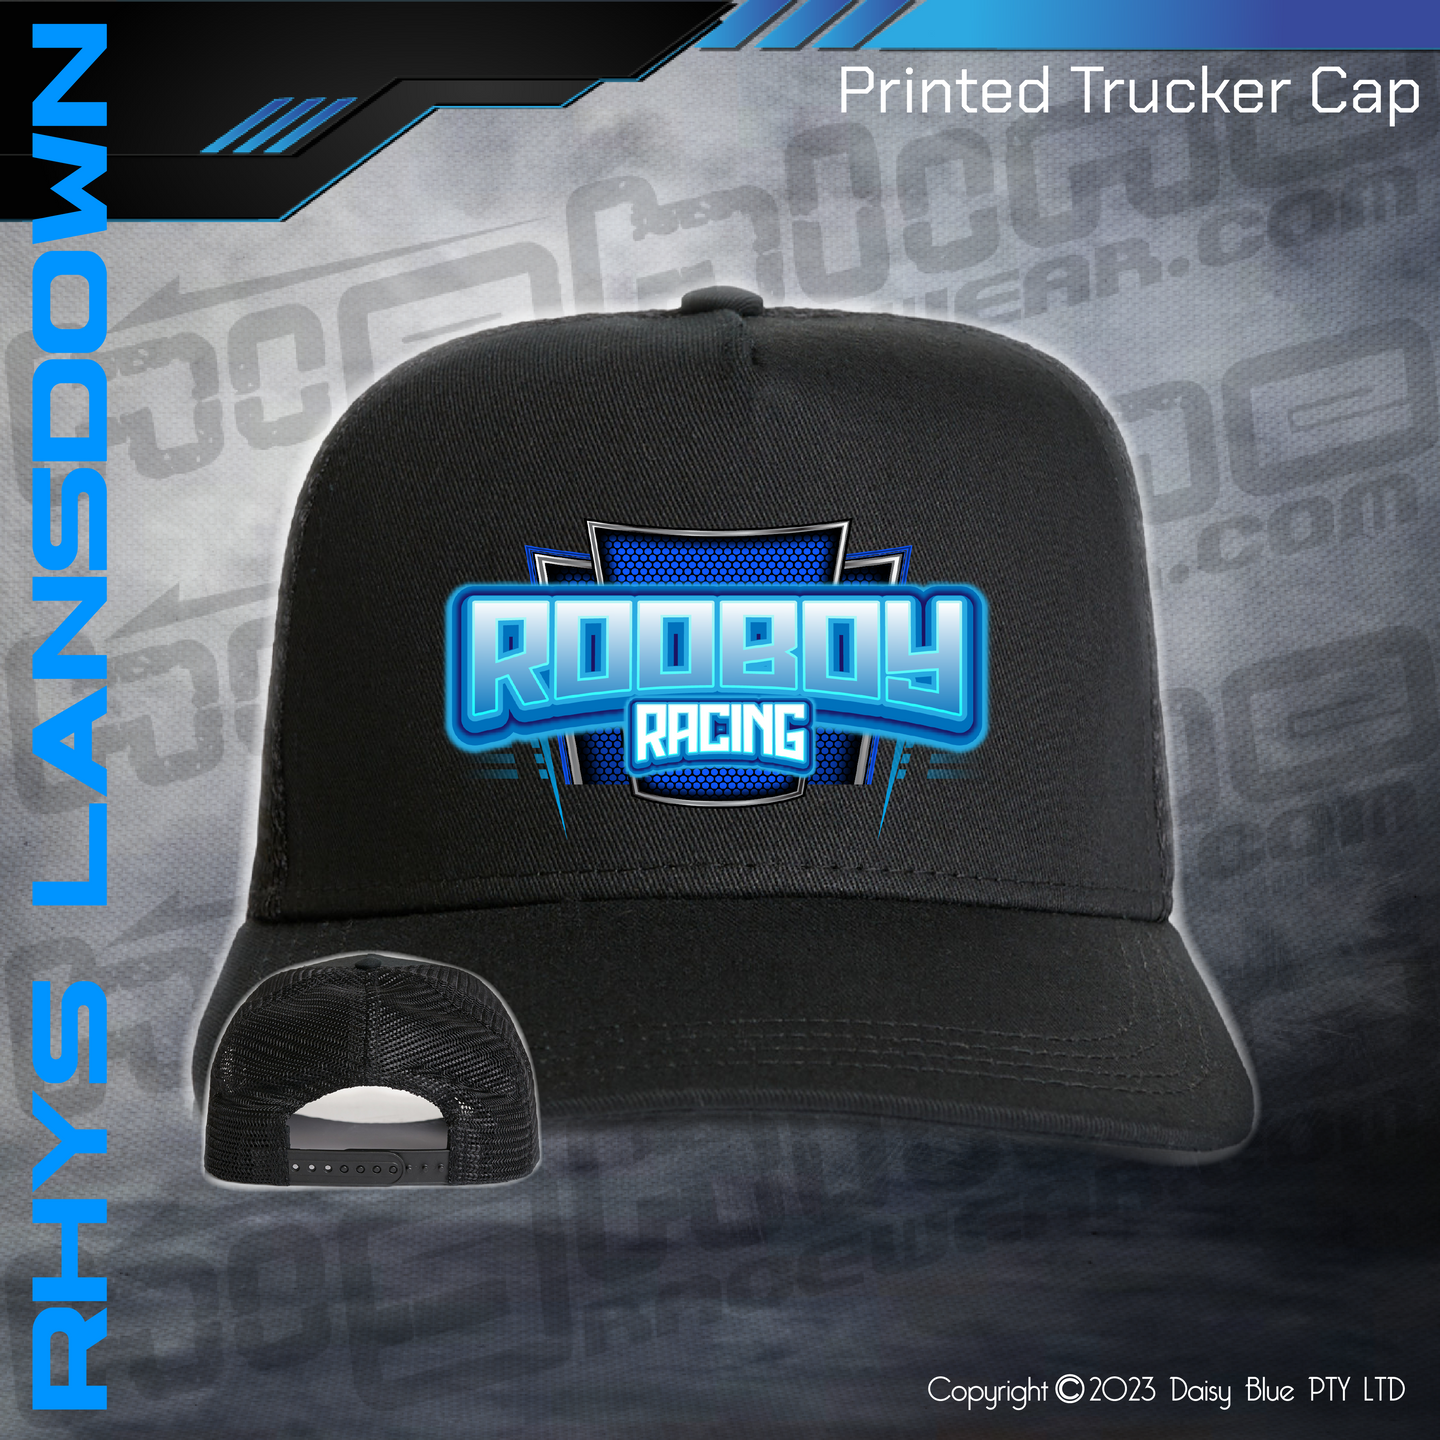 Printed Trucker Cap -  RHYS 'ROOBOY' LANSDOWN